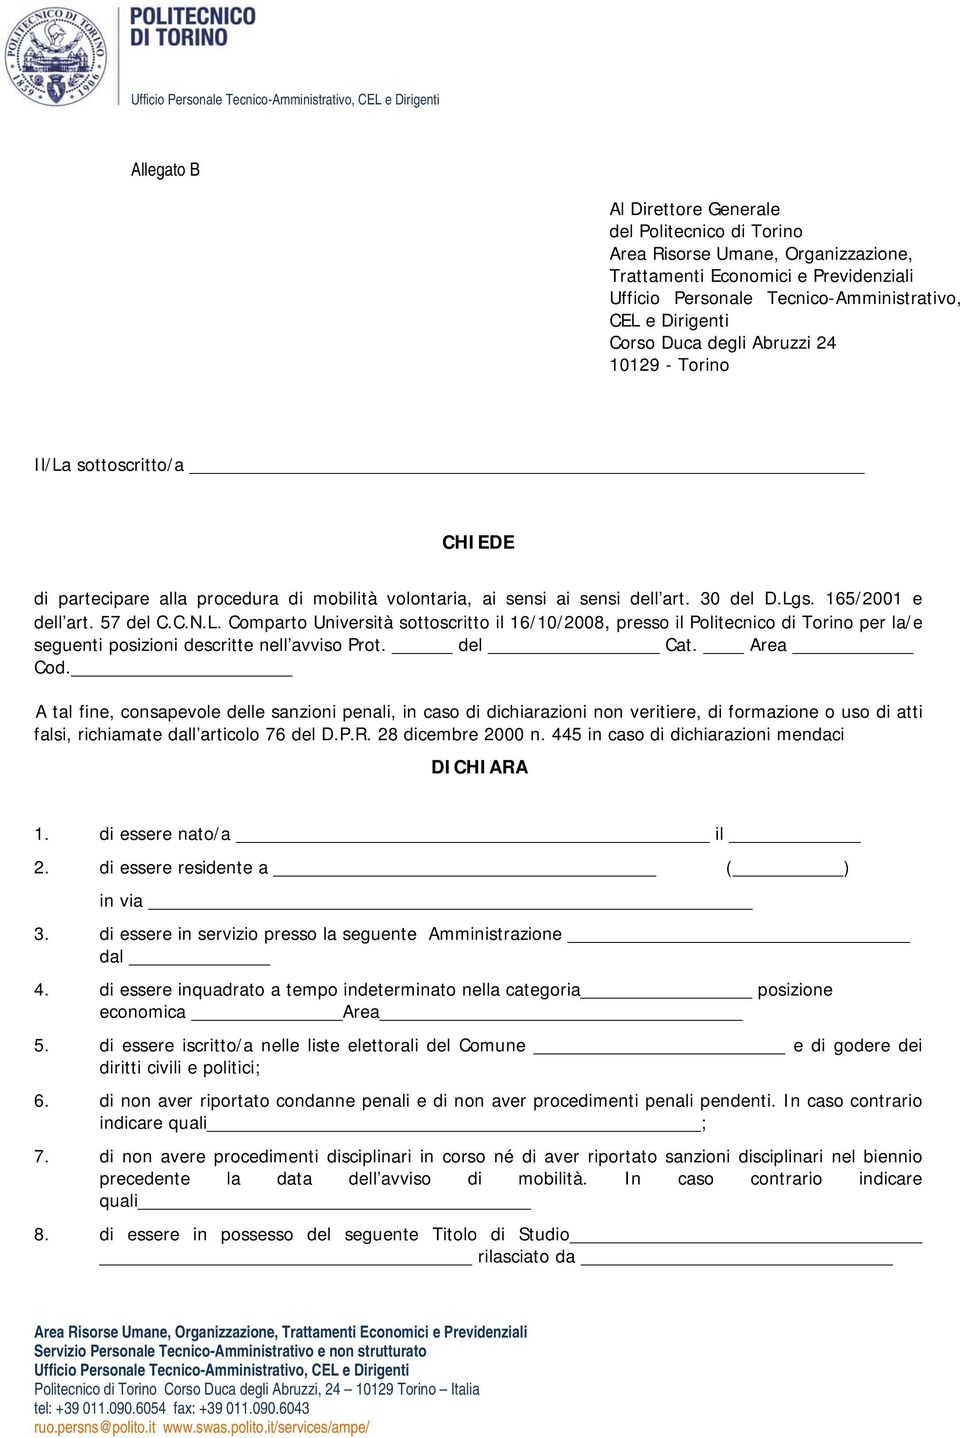 art. 30 del D.Lgs. 165/2001 e dell art. 57 del C.C.N.L. Comparto Università sottoscritto il 16/10/2008, presso il Politecnico di Torino per la/e seguenti posizioni descritte nell avviso Prot. del Cat.